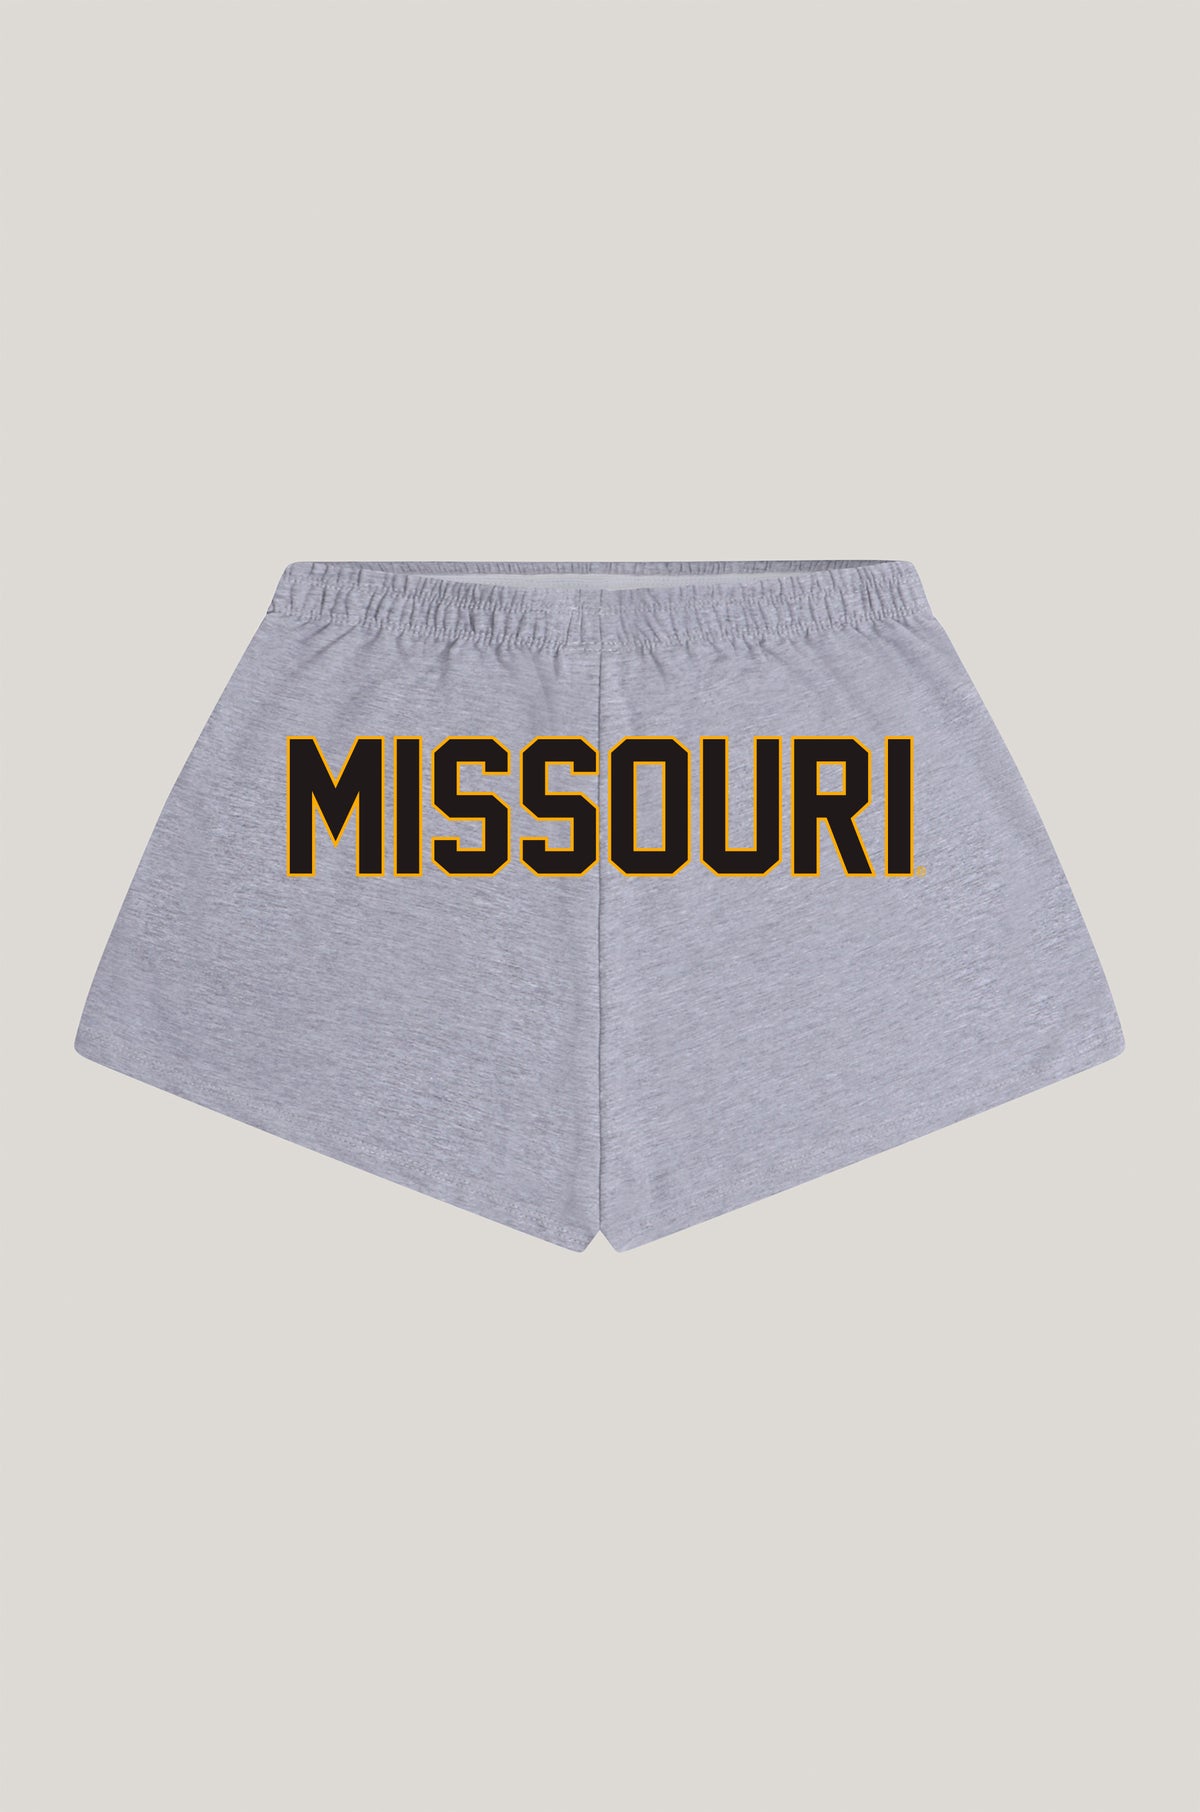 Missouri P.E. Shorts